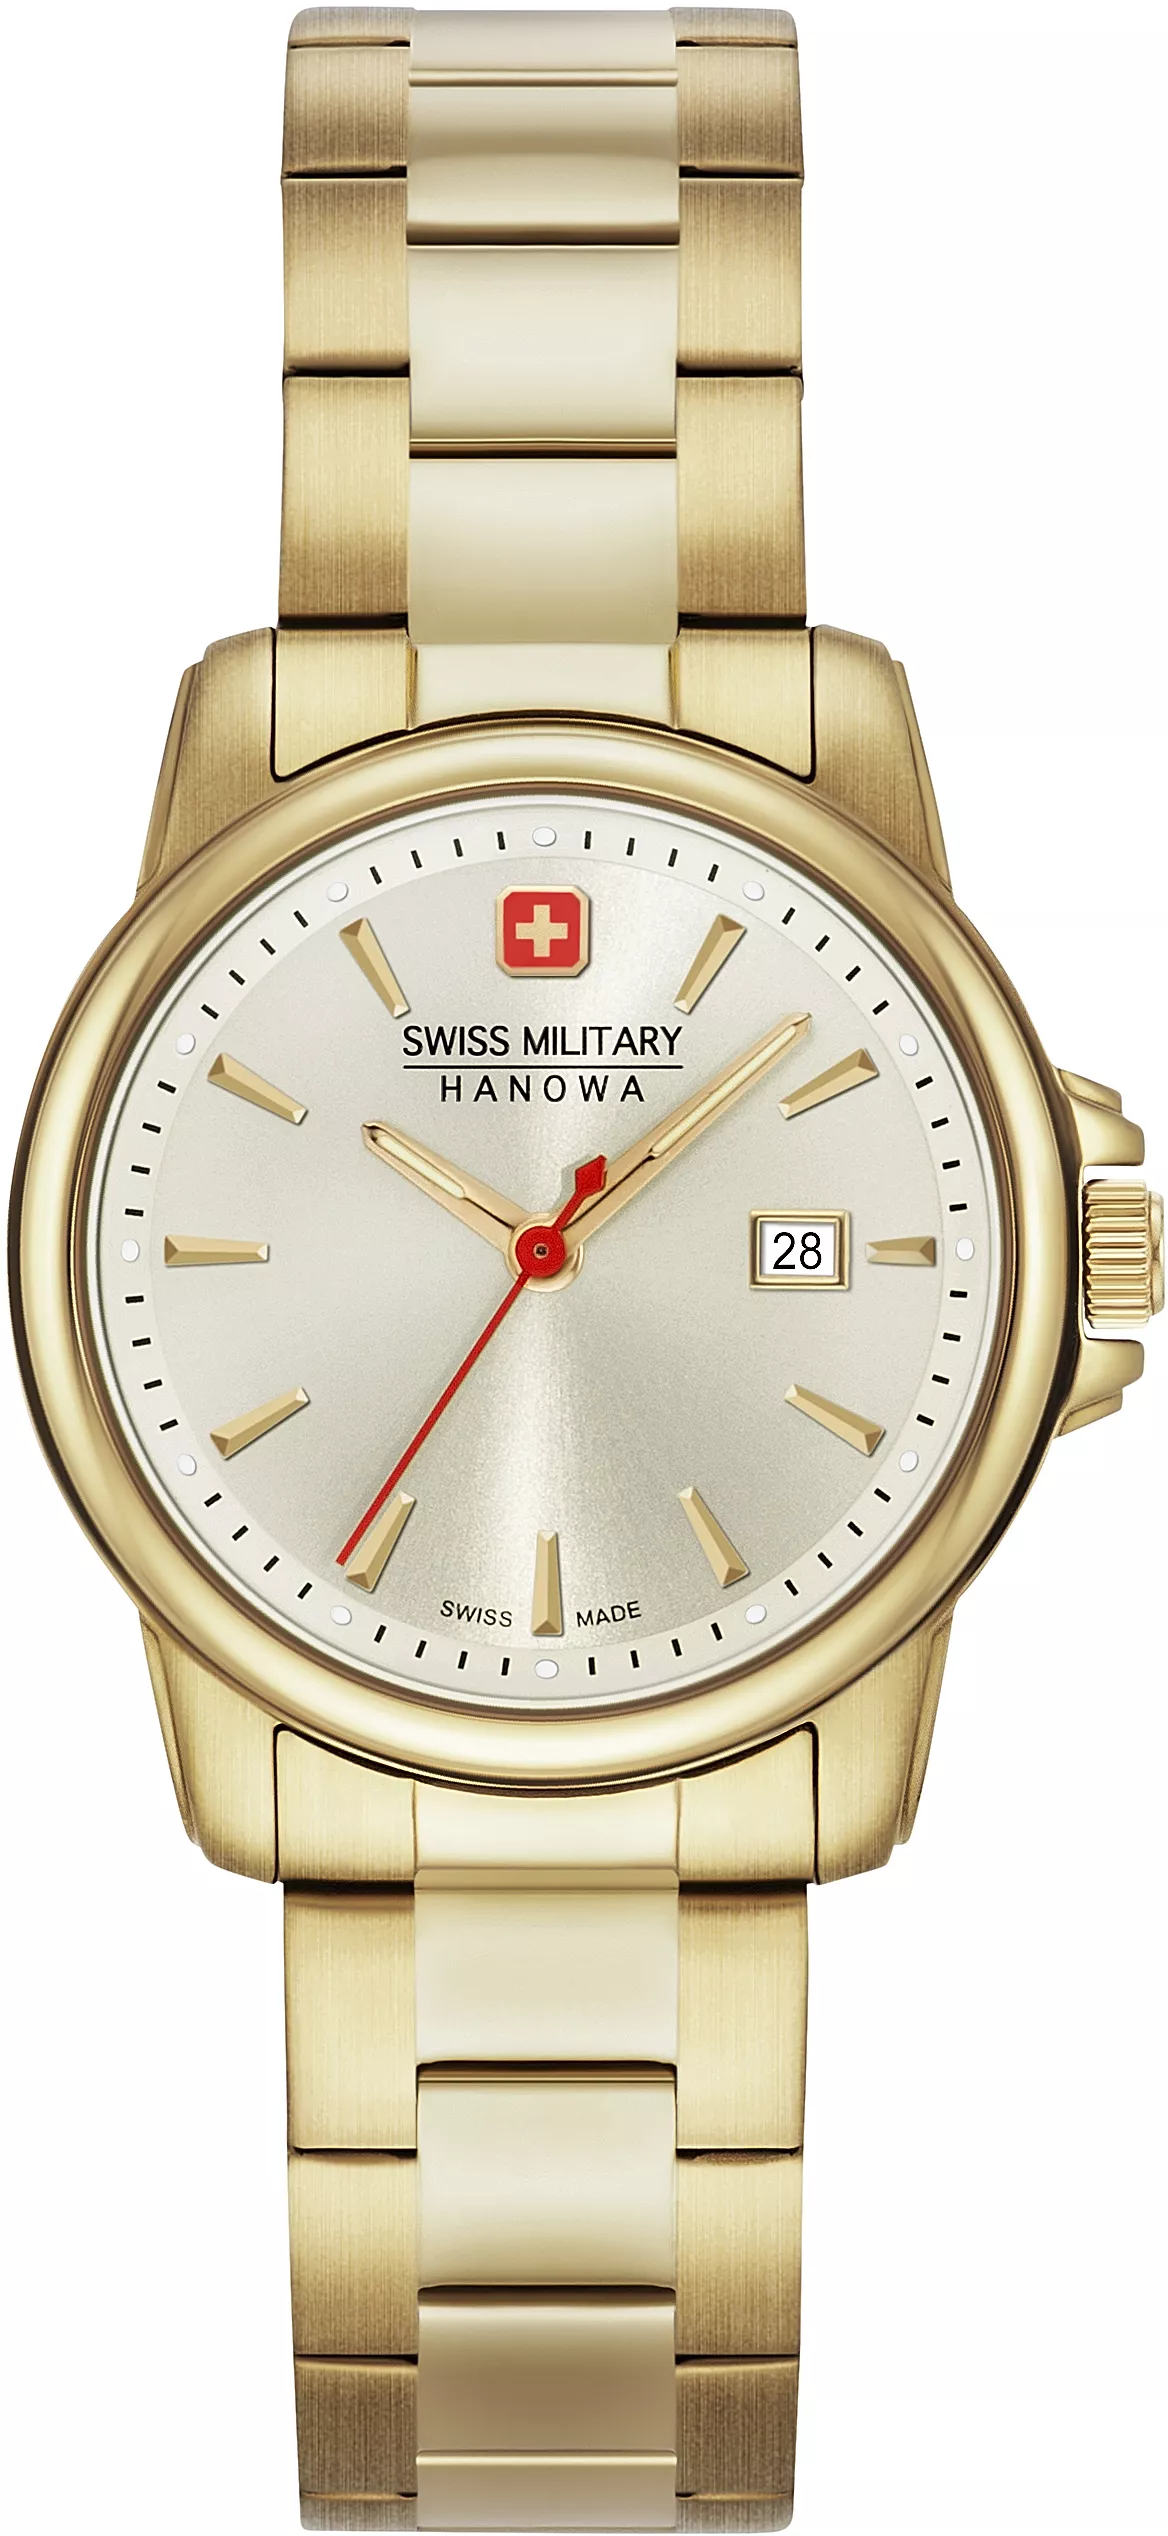 Swiss Military Hanowa Horloge 32 Stainless Steel 06-7230.7.02.002